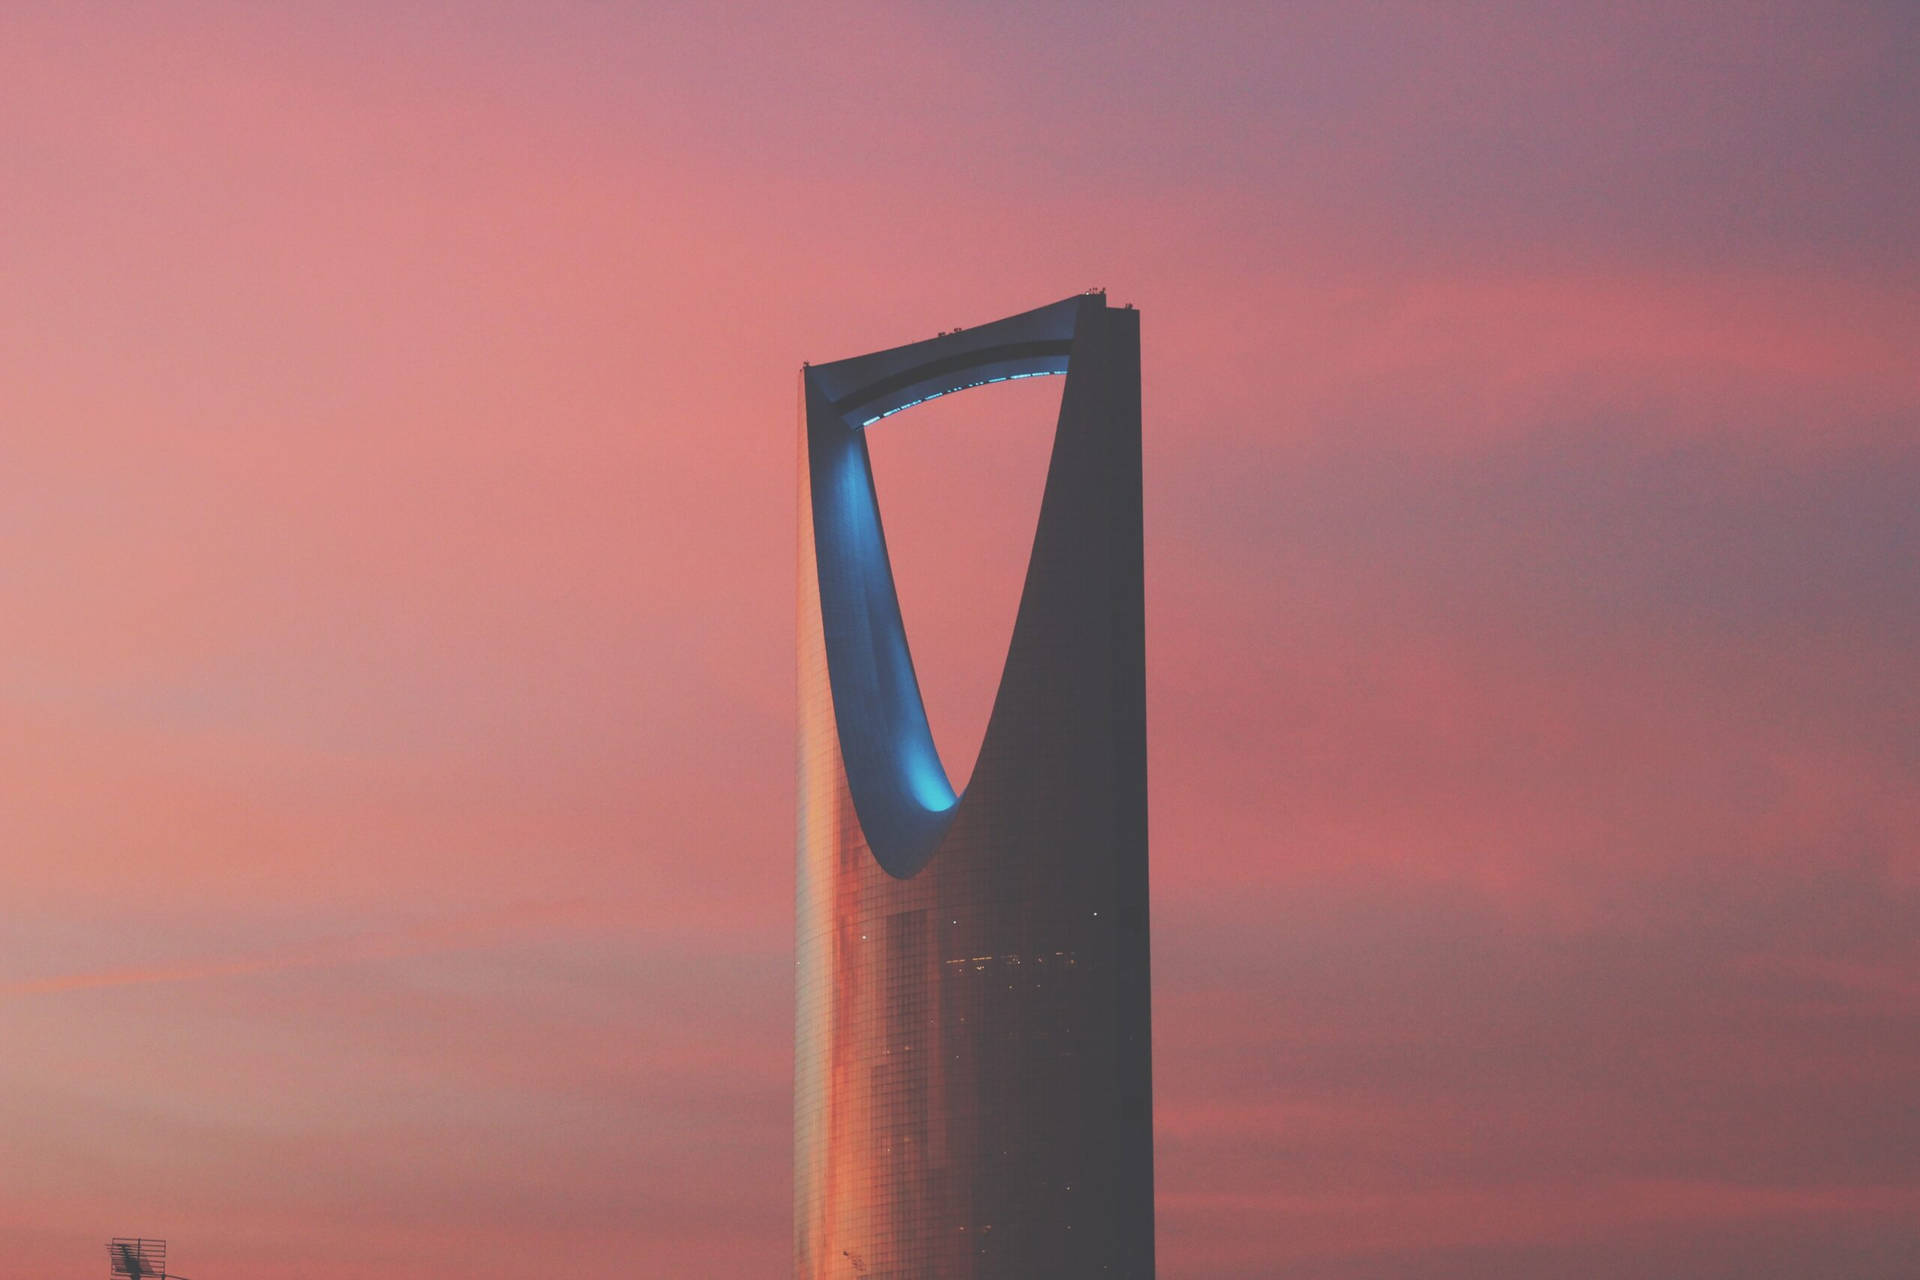 Saudi Arabia's Kingdom Centre Aesthetic